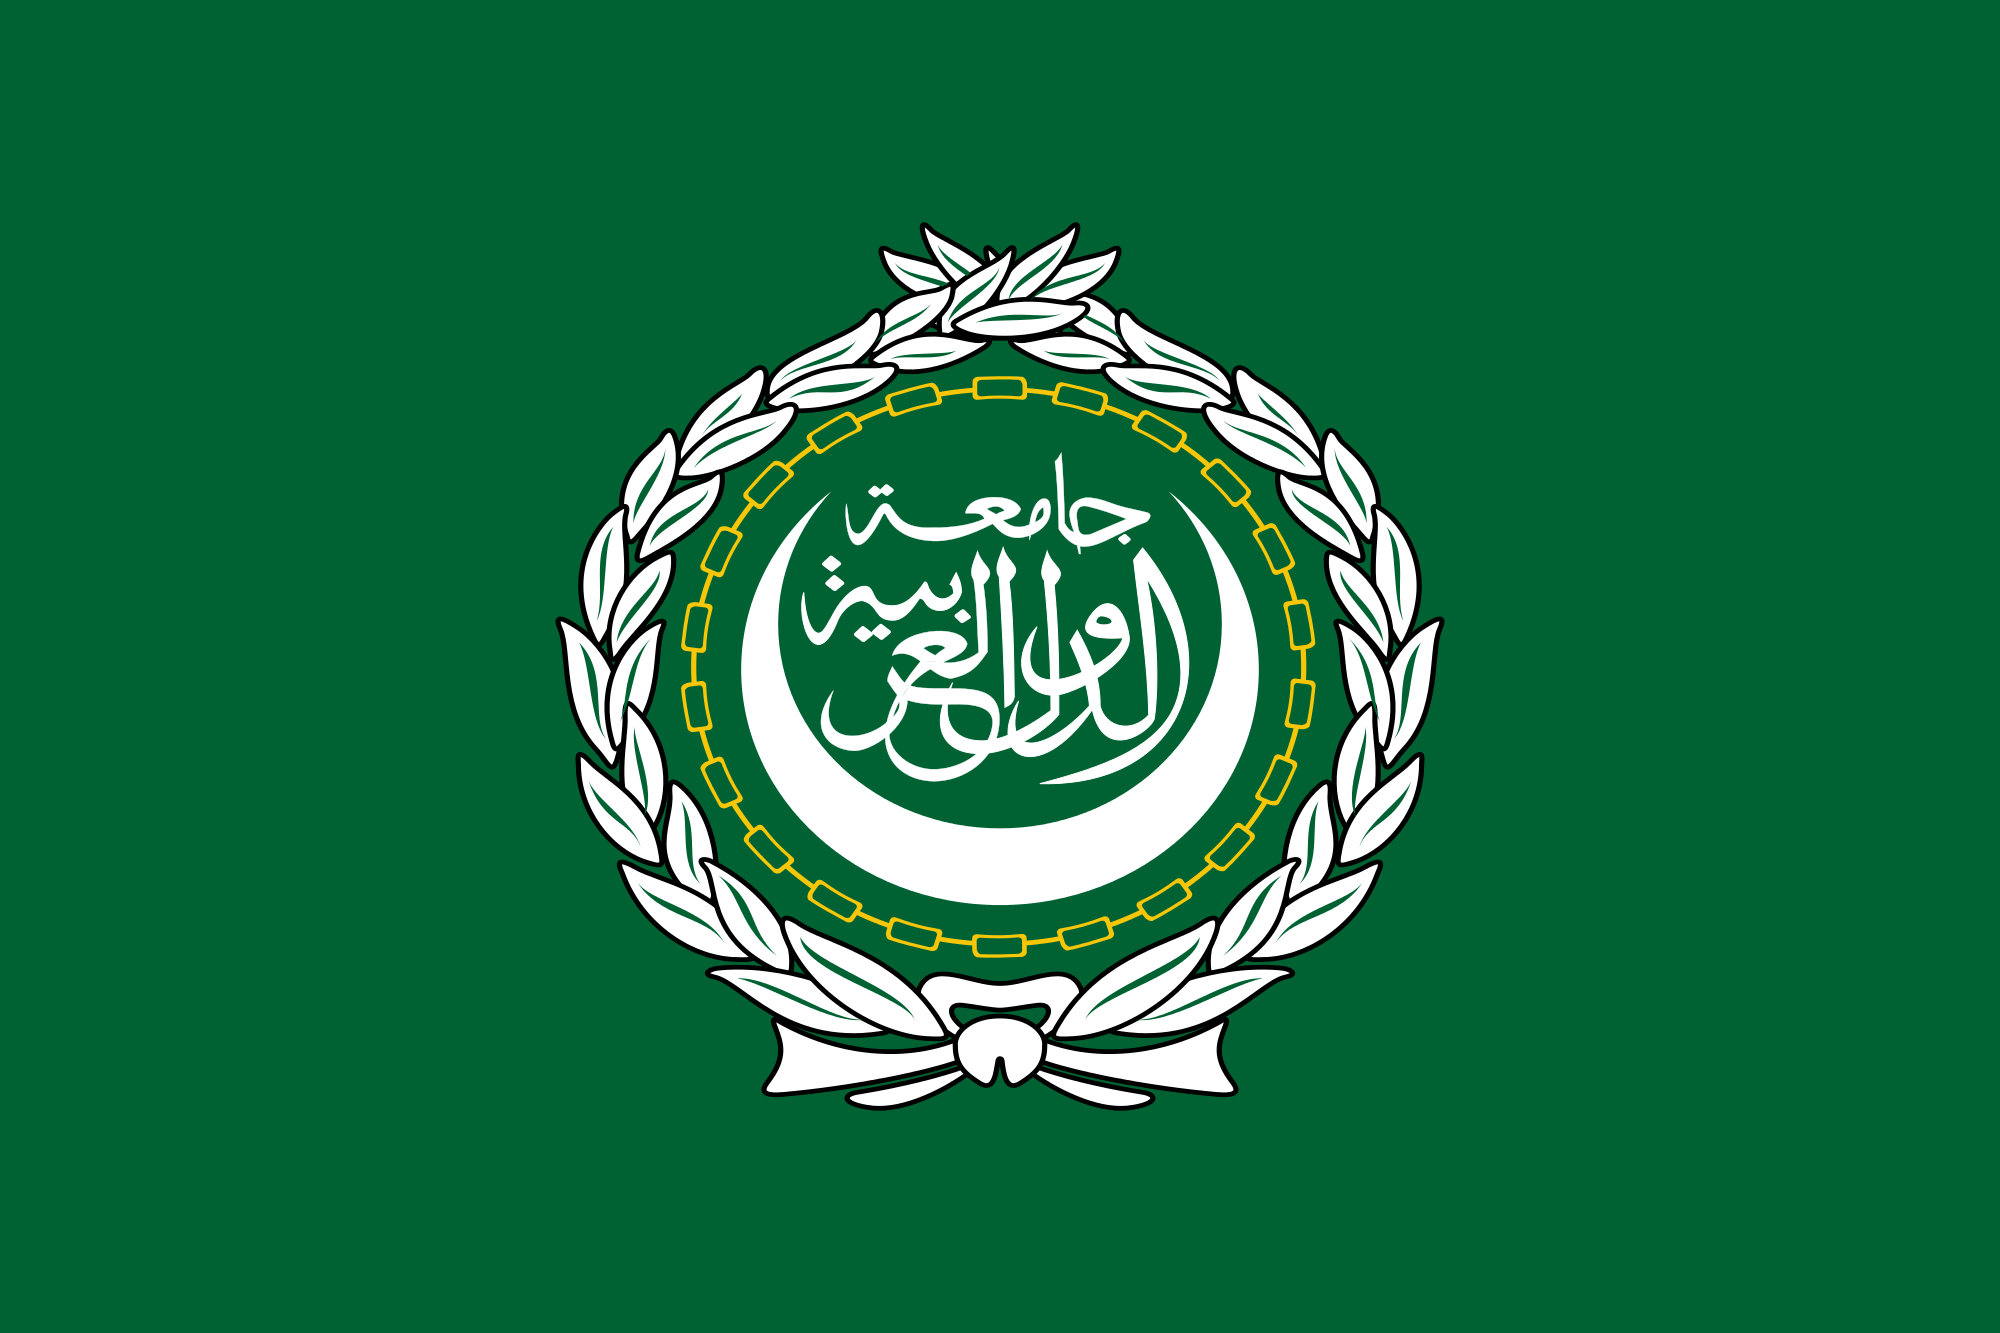 Він представлений у вигляді зеленого полотнища, на тлі якого зображено двадцять ланок ланцюга, що символізує держав-учасників, арабською в'яззю і півмісяцем